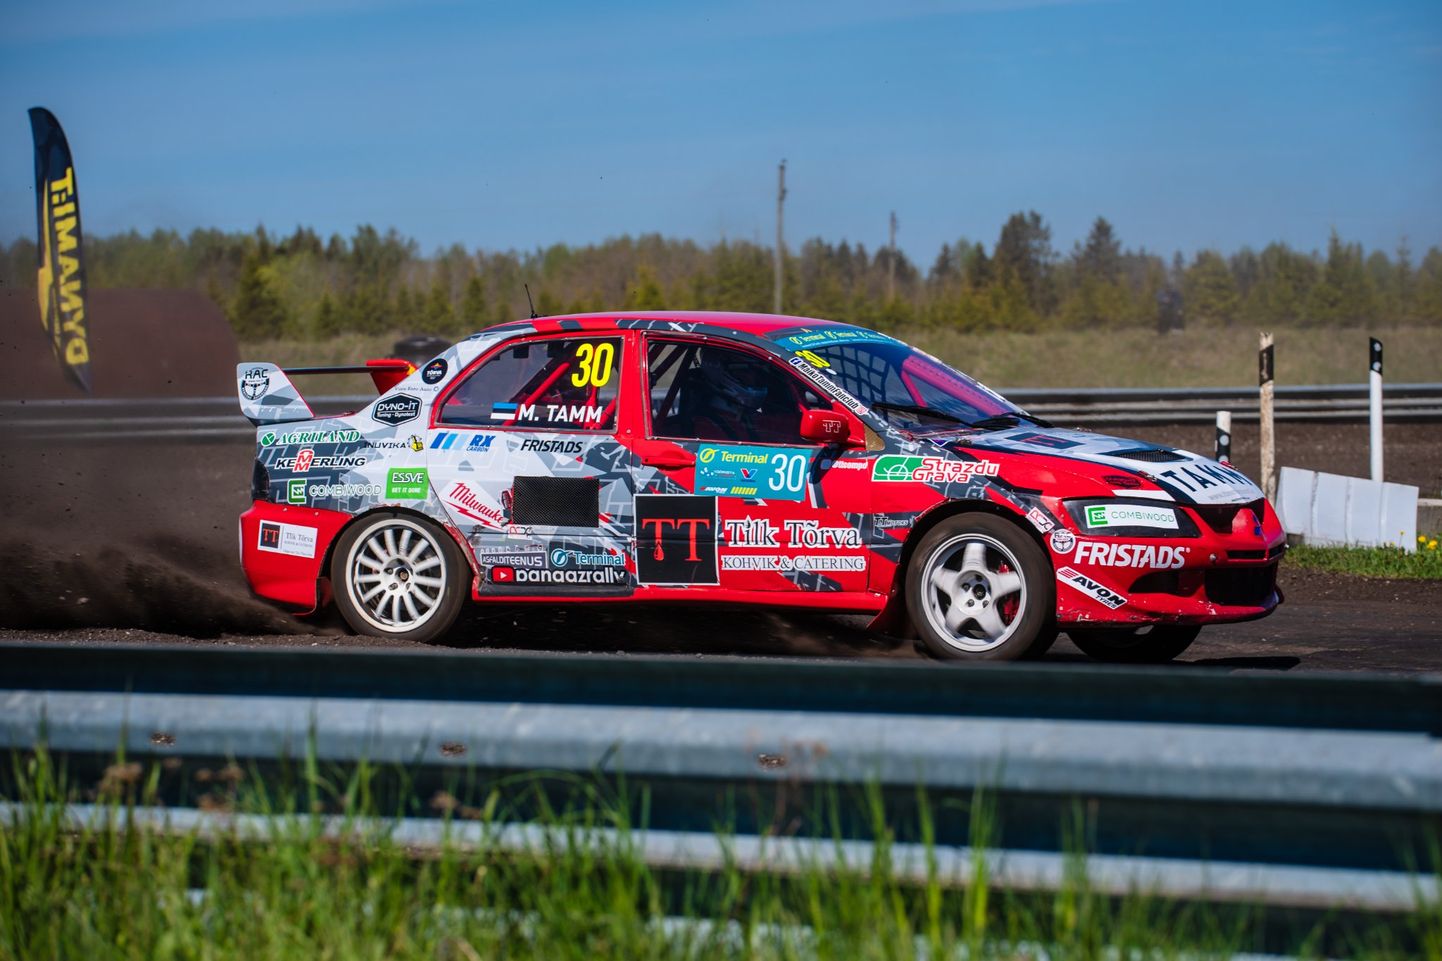 Tõrva rallikrossisõitja Maiko Tamm saavutas Laitse Rally Pargis Supercar klassis esikoha.